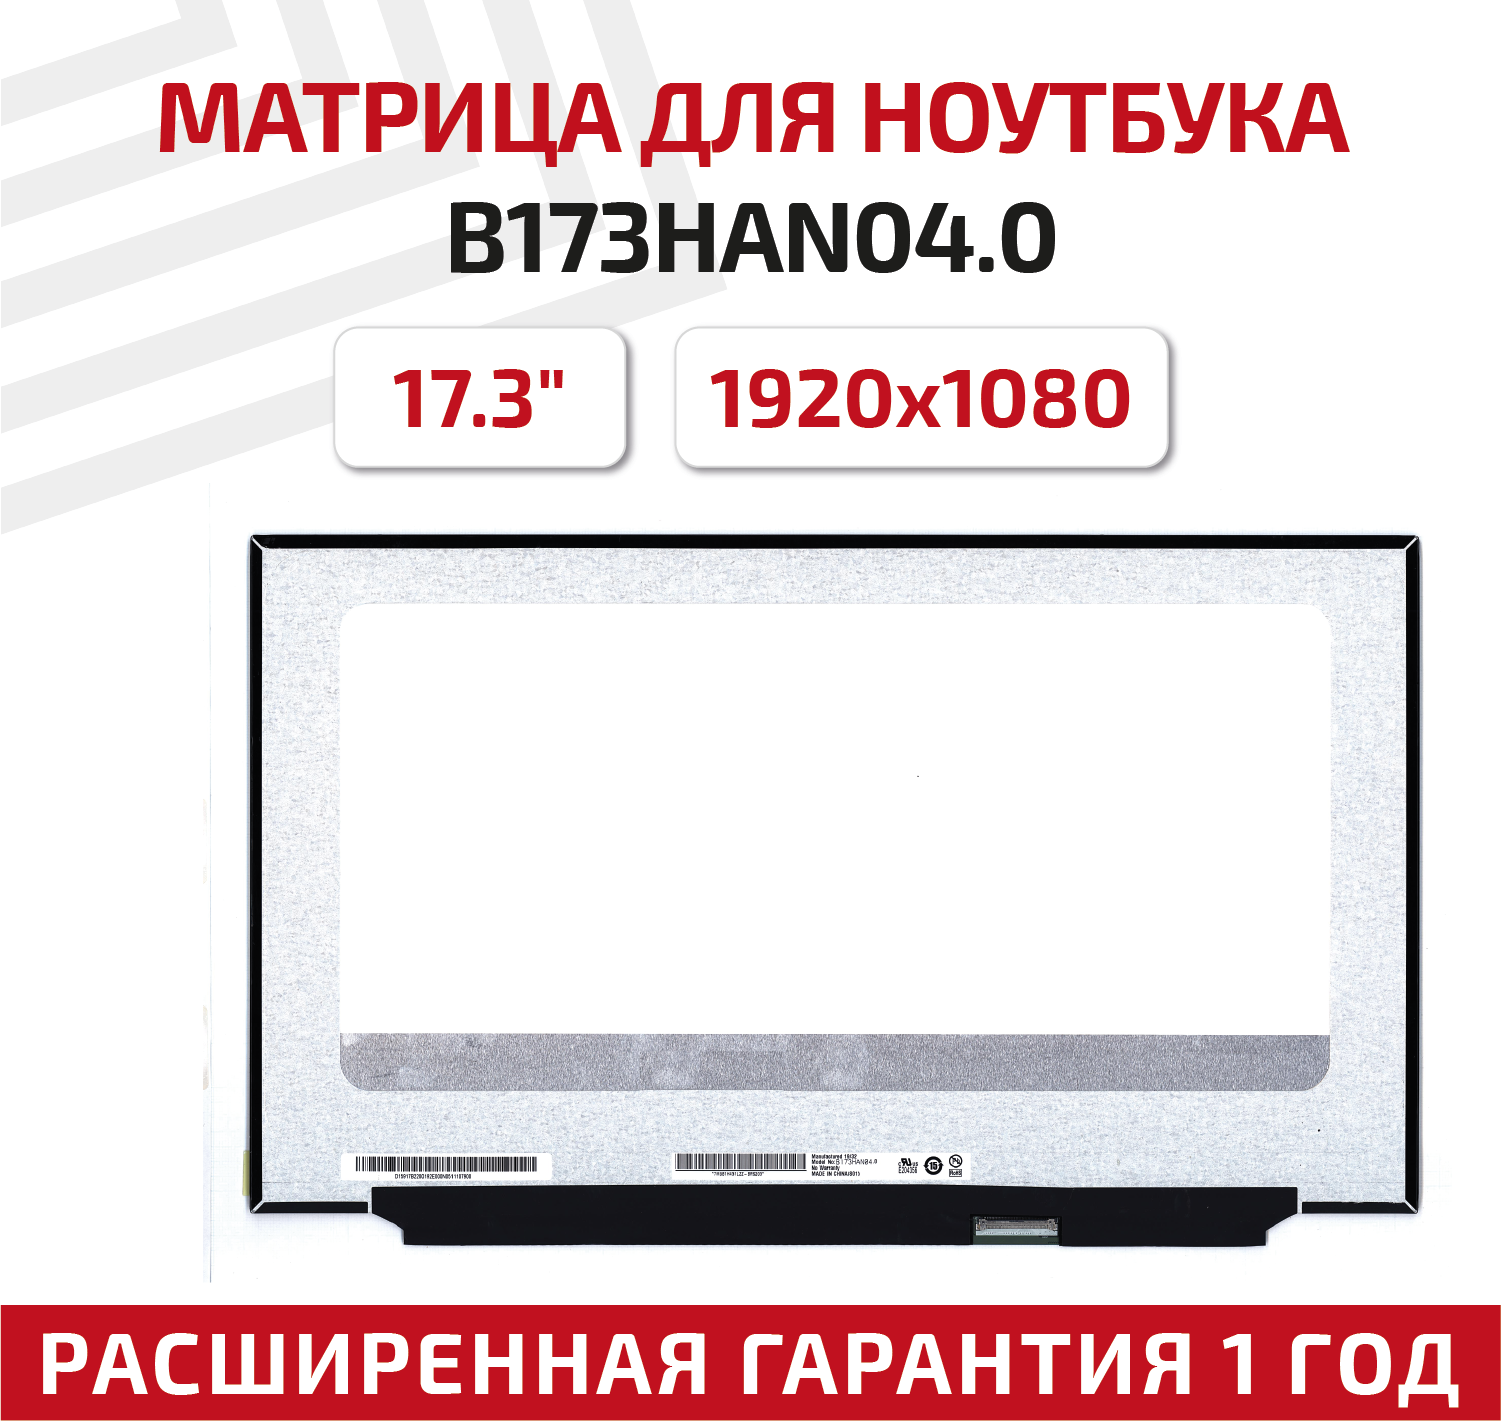 Матрица (экран) для ноутбука B173HAN04.0, 17.3", 1920x1080, Slim (тонкая), 40-pin, светодиодная (LED), глянцевая